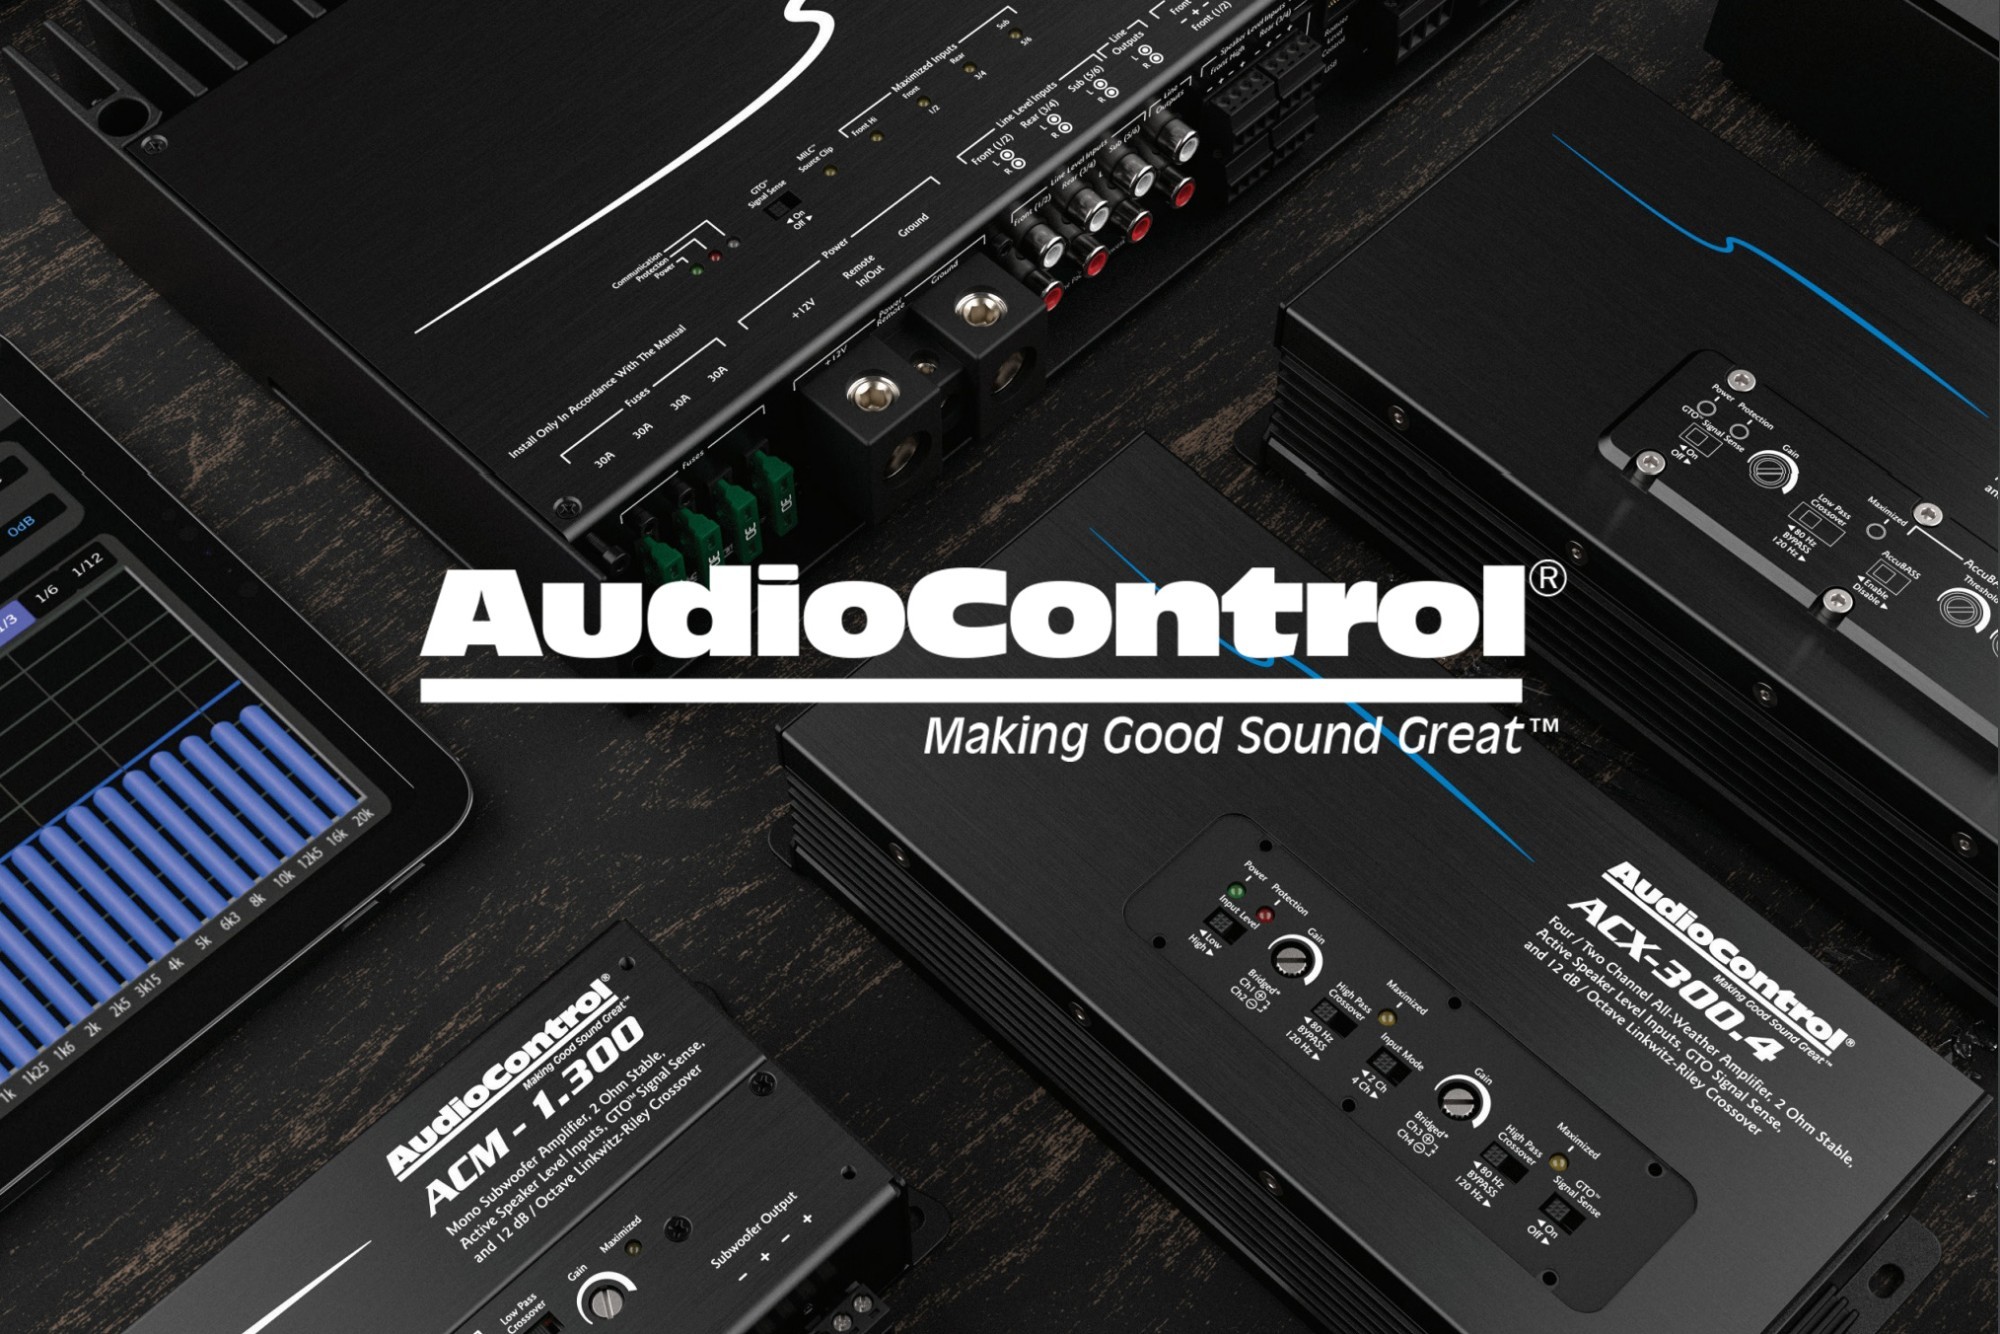 Predstavujeme produkty značky AudioControl